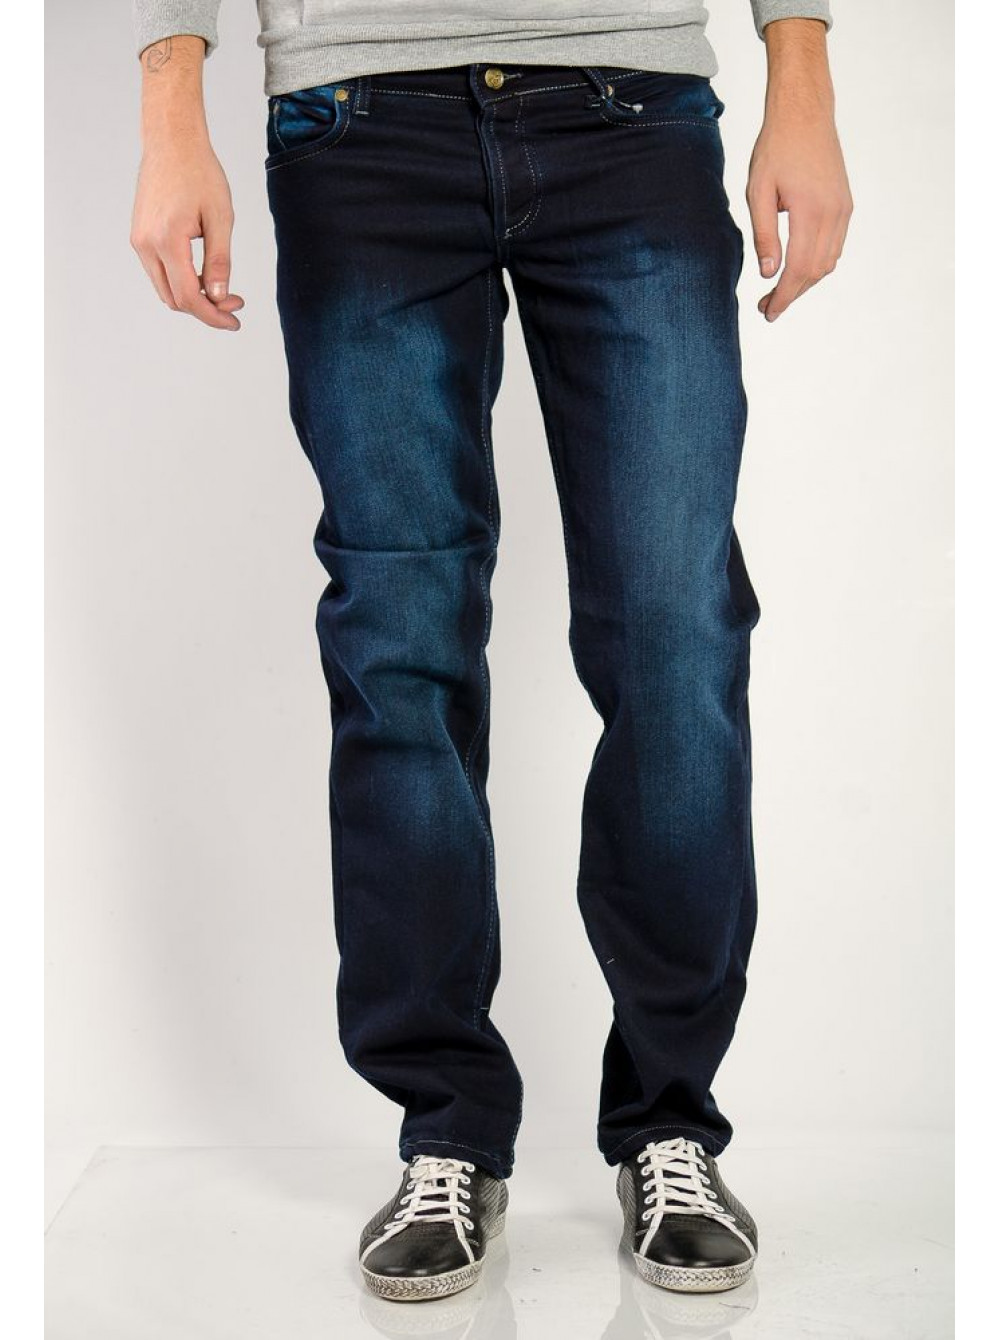 Недорогие мужские джинсы магазин. Мужские джинсы. Синие джинсы мужские. Темно синие джинсы мужские. Джинсы мужские классические.